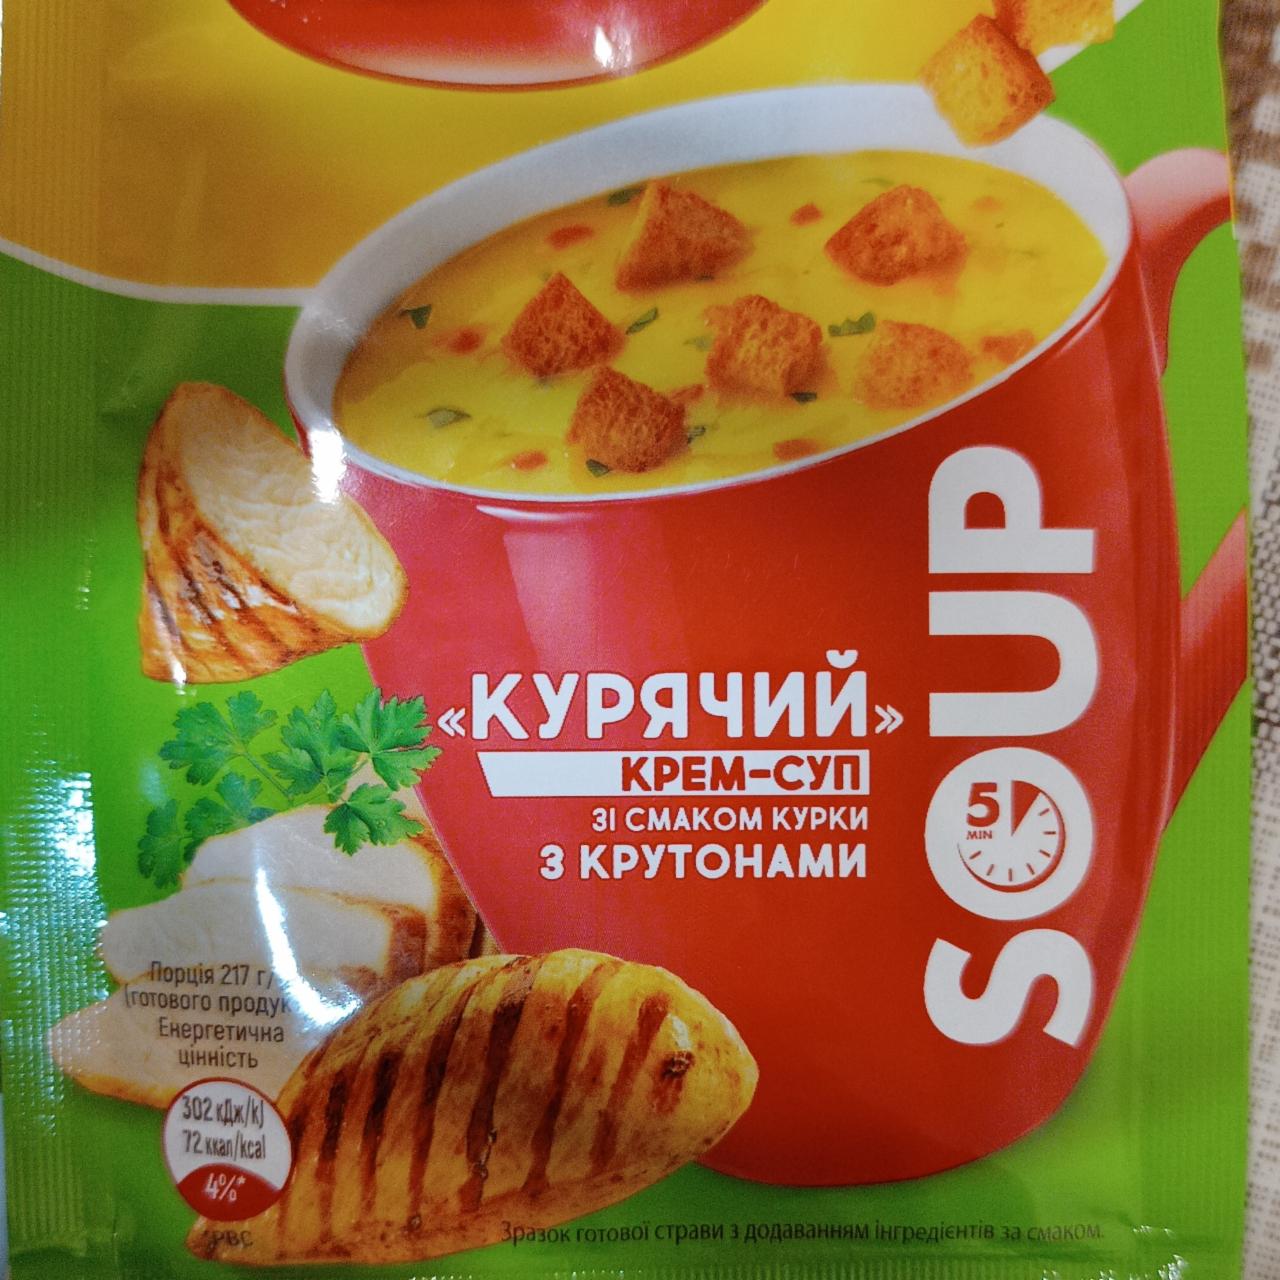 Фото - Крем-суп куриный с крутонами Reeva